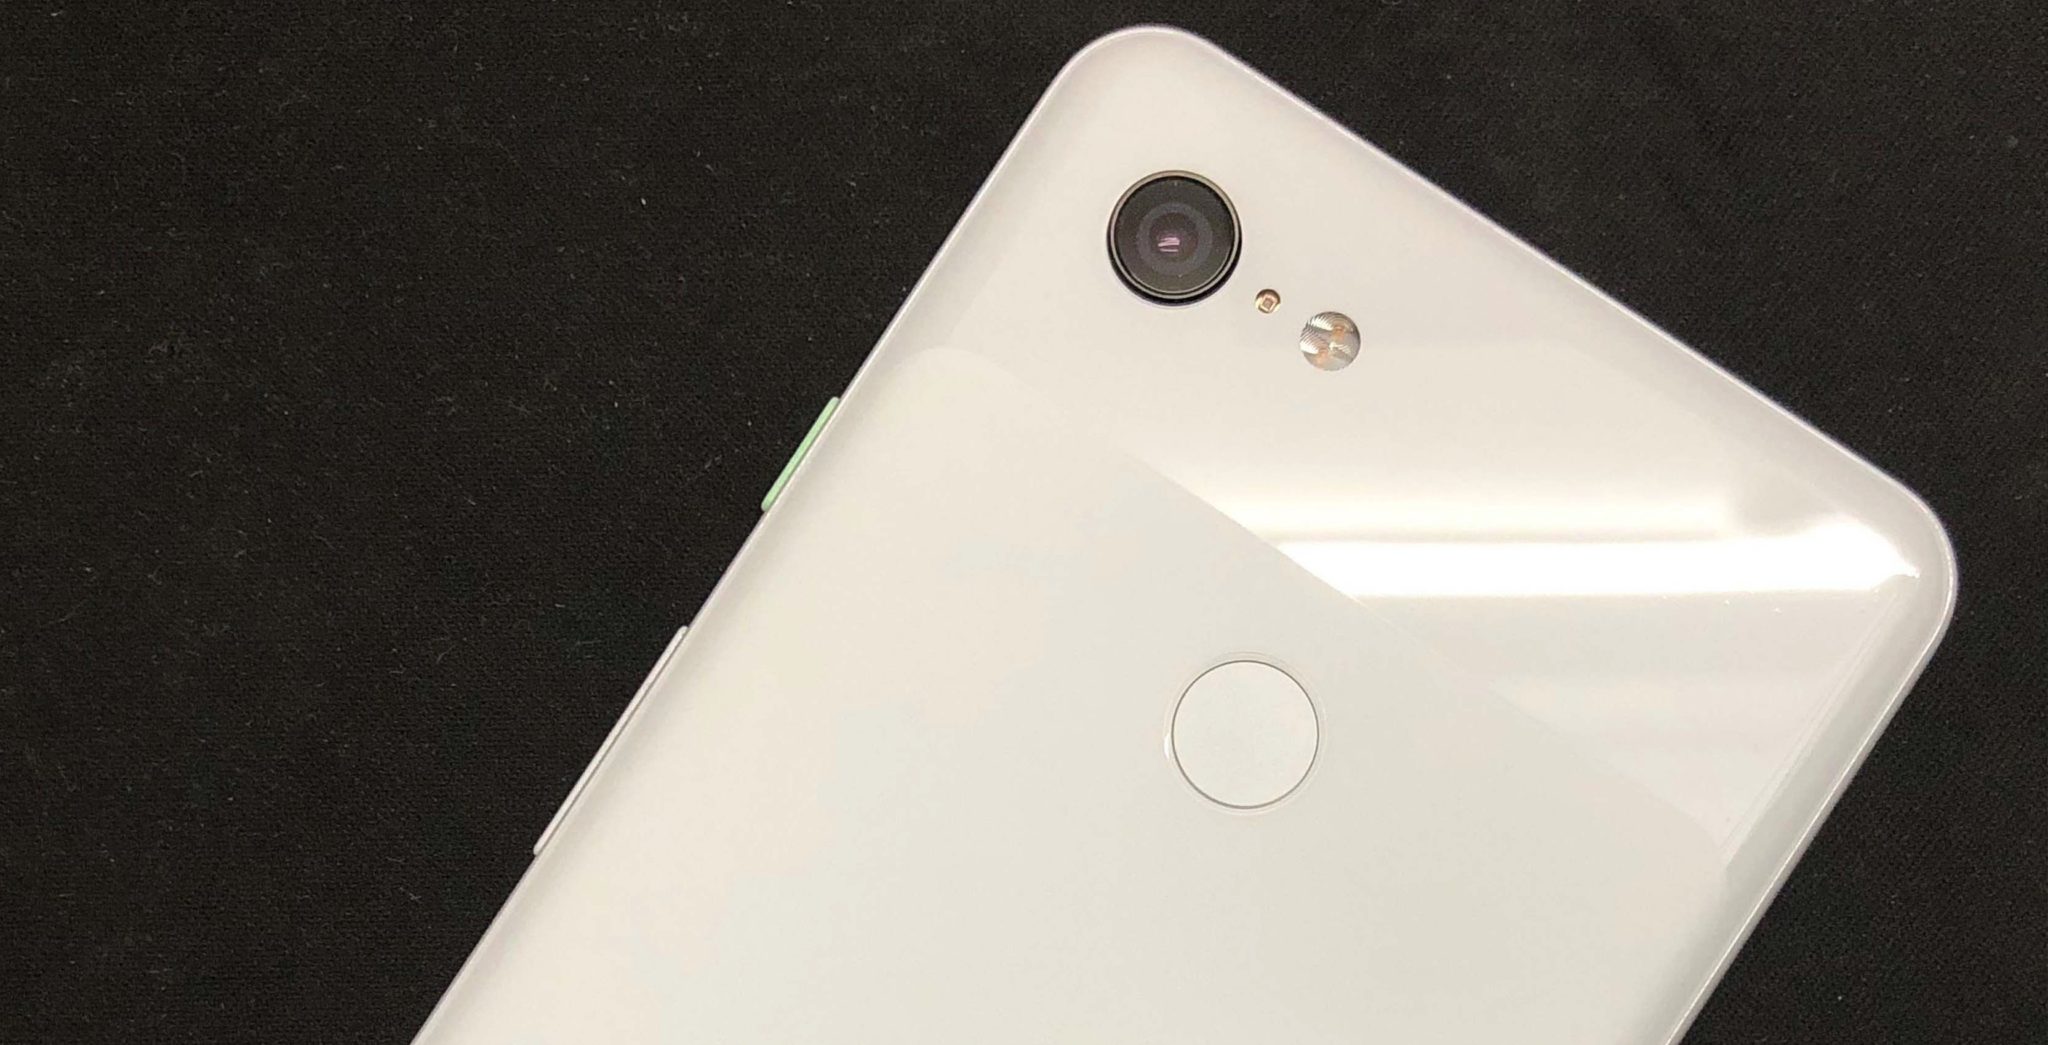 Google Pixel 3 smartphone